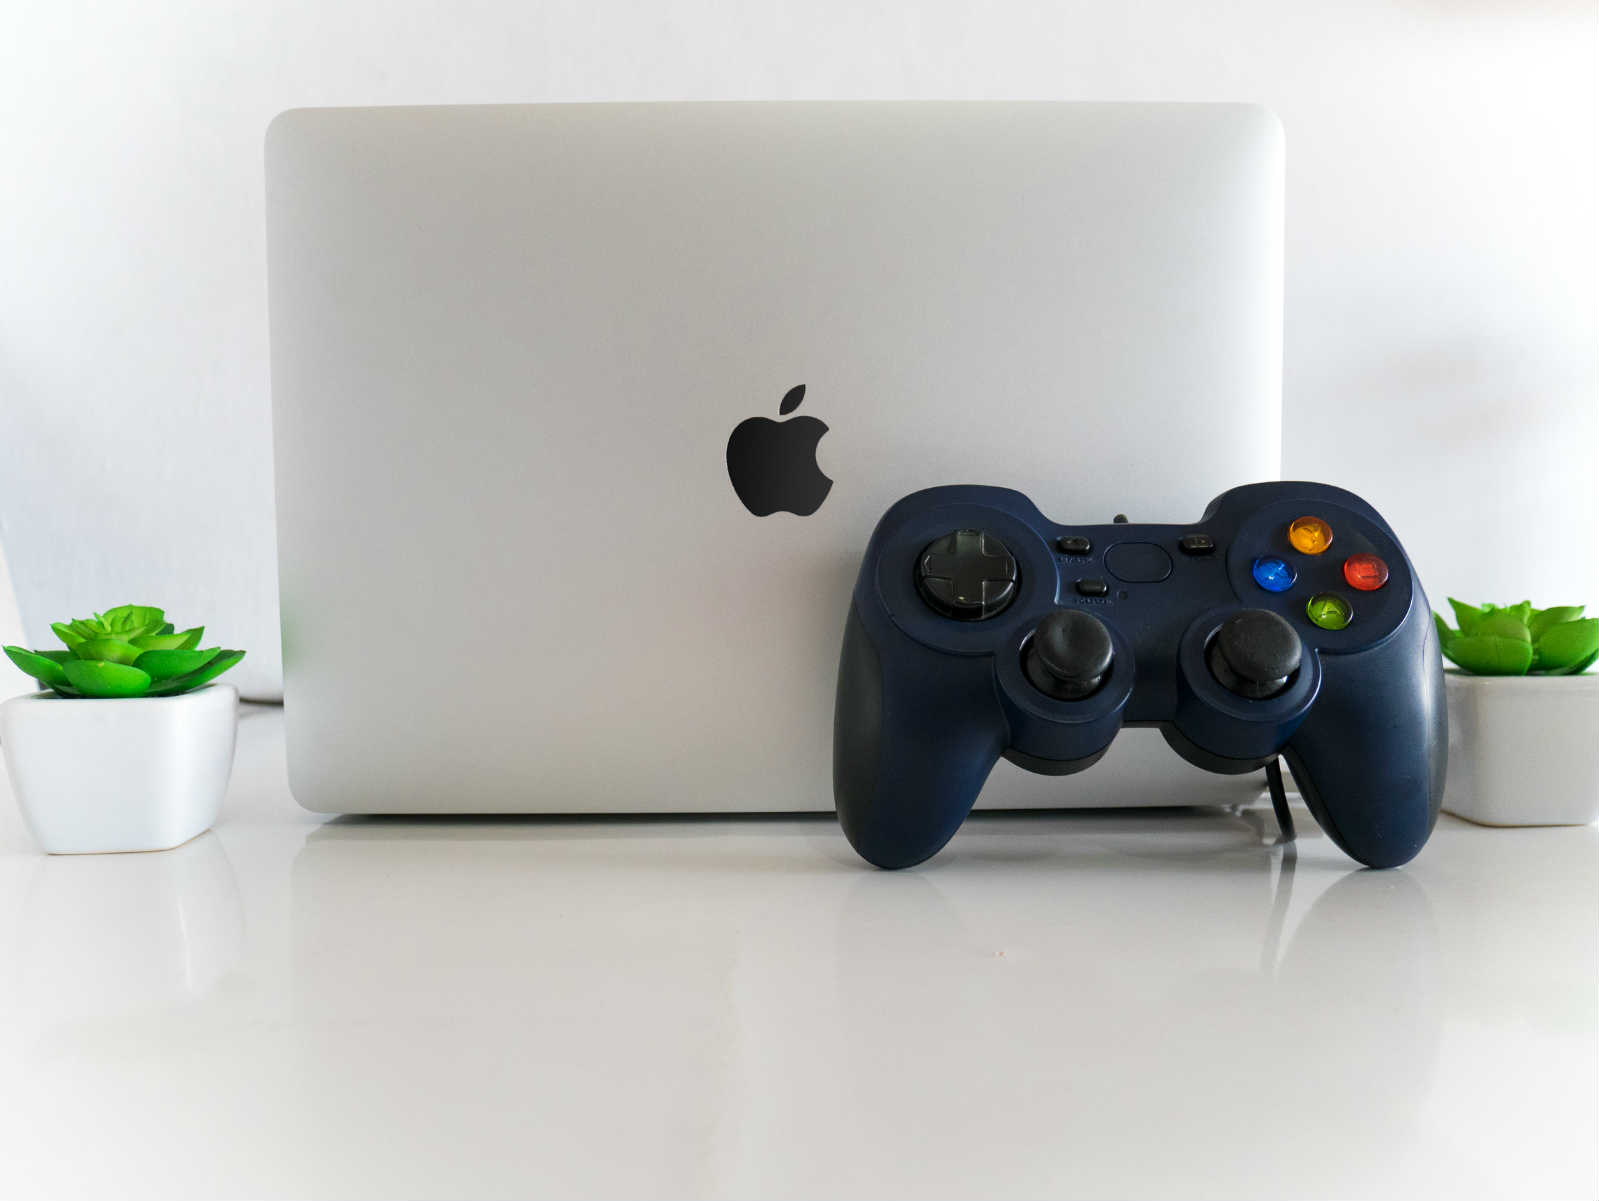 15 Best Free Mac Games You Should Play (2020) - ESR Blog